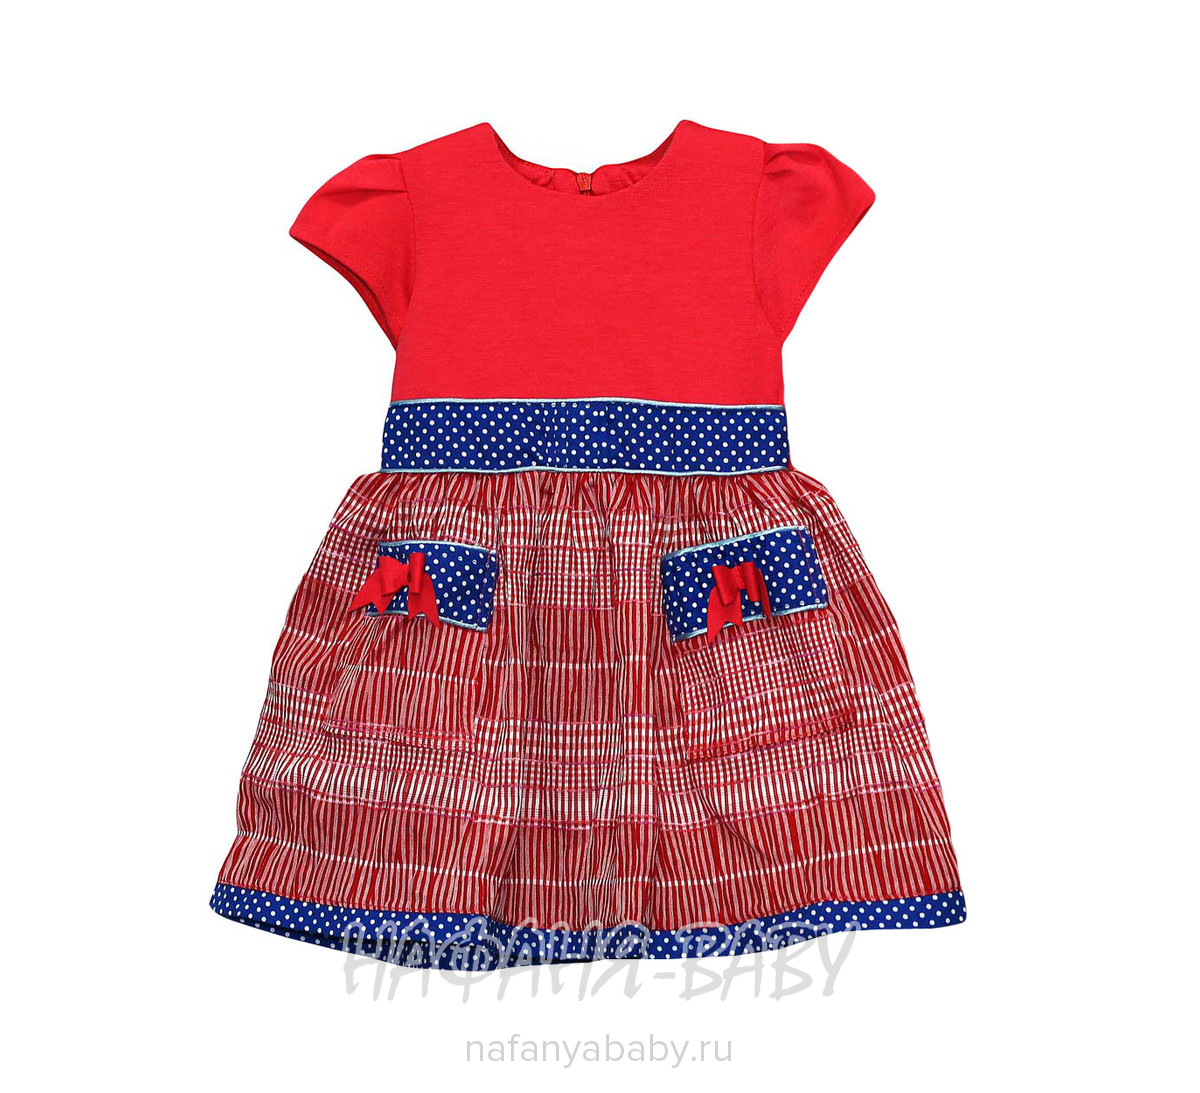 Детское платье KGMART арт: 2141, 5-9 лет, 1-4 года, цвет малиновый с синим, оптом 